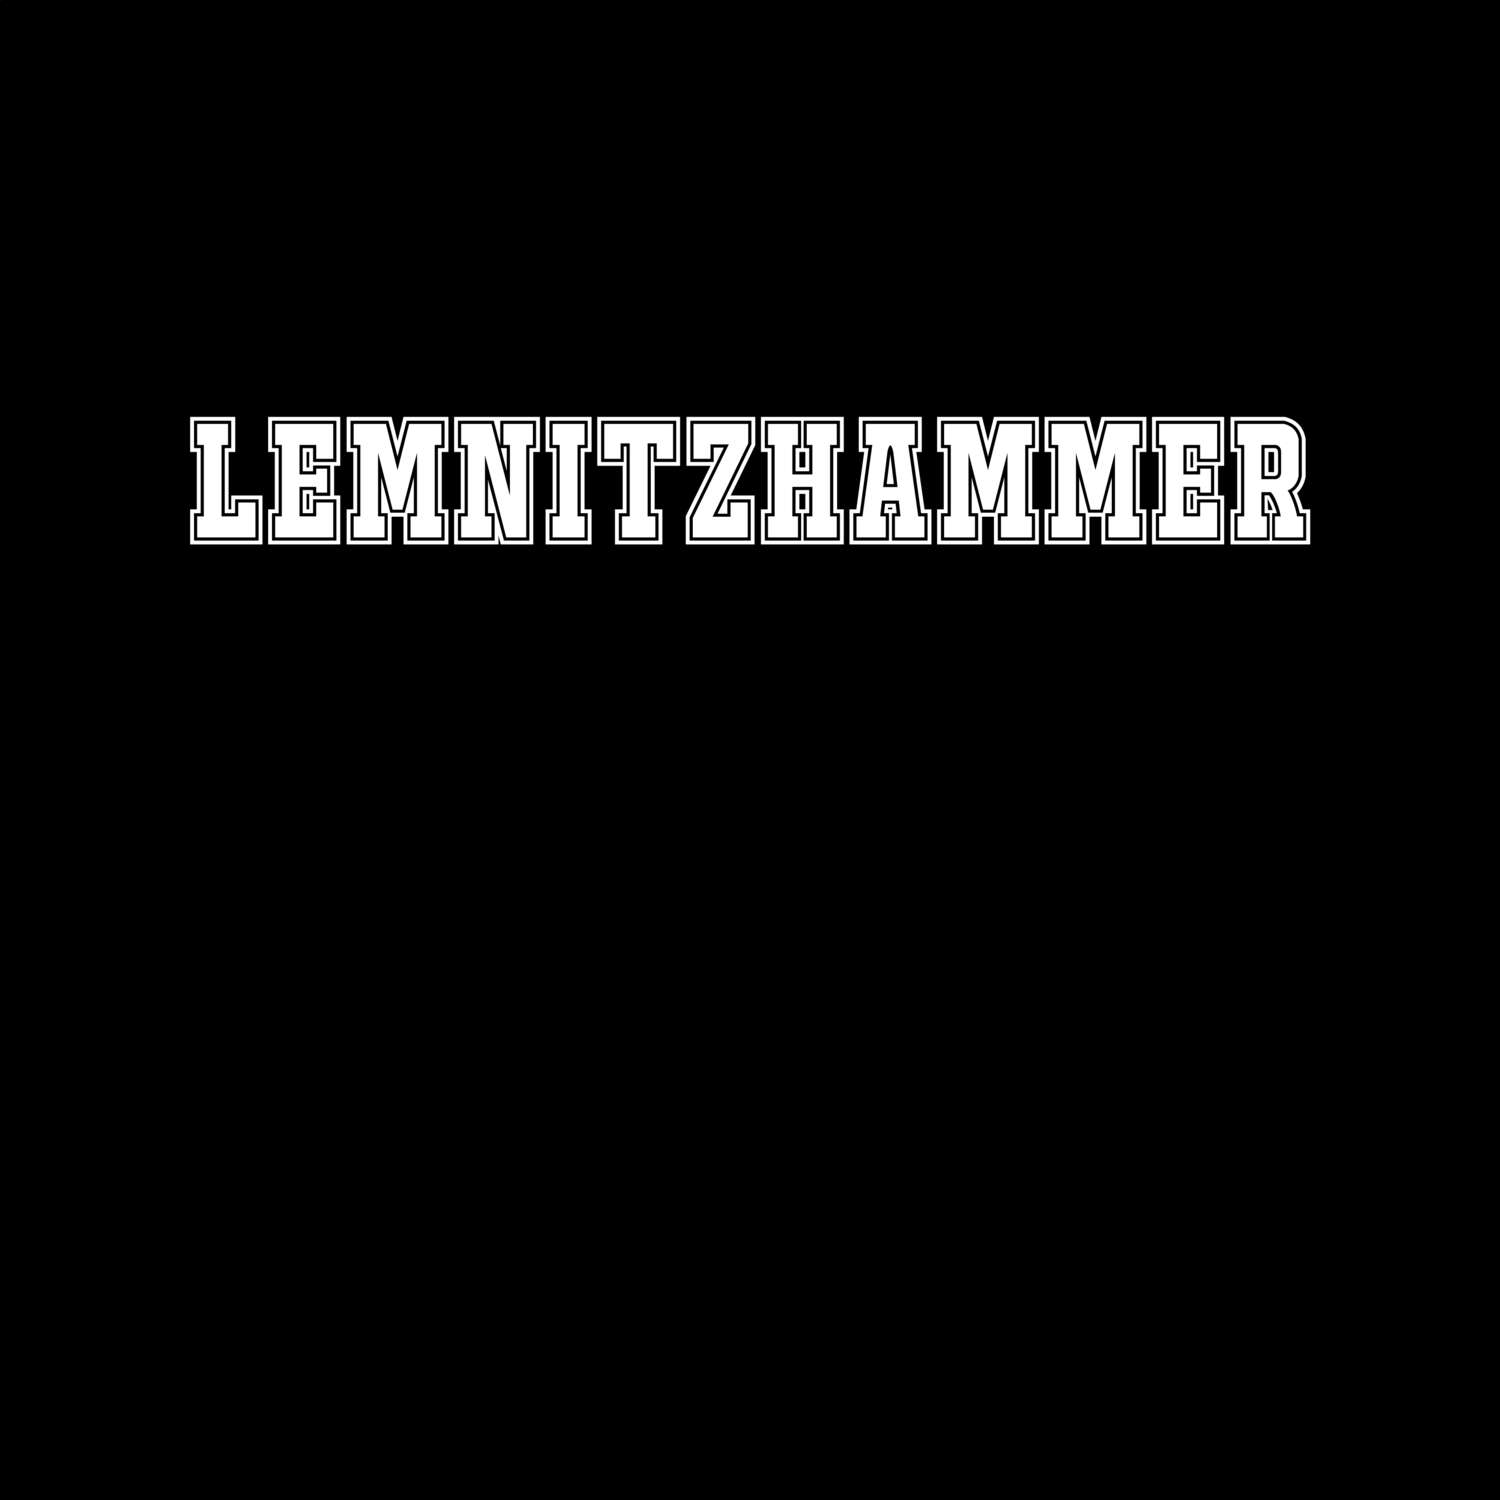 Lemnitzhammer T-Shirt »Classic«